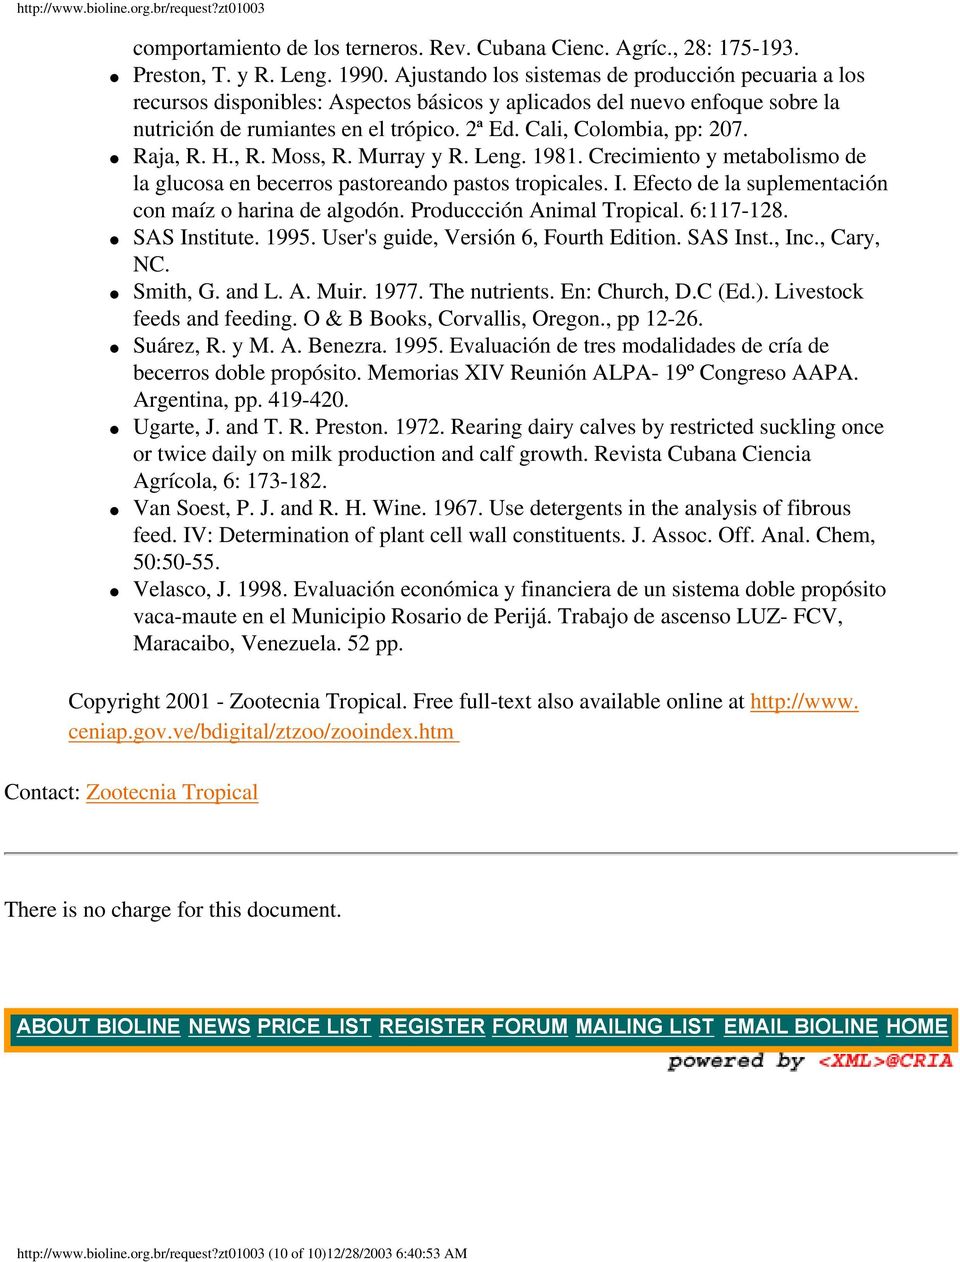 Raja, R. H., R. Moss, R. Murray y R. Leng. 1981. Crecimiento y metabolismo de la glucosa en becerros pastoreando pastos tropicales. I. Efecto de la suplementación con maíz o harina de algodón.